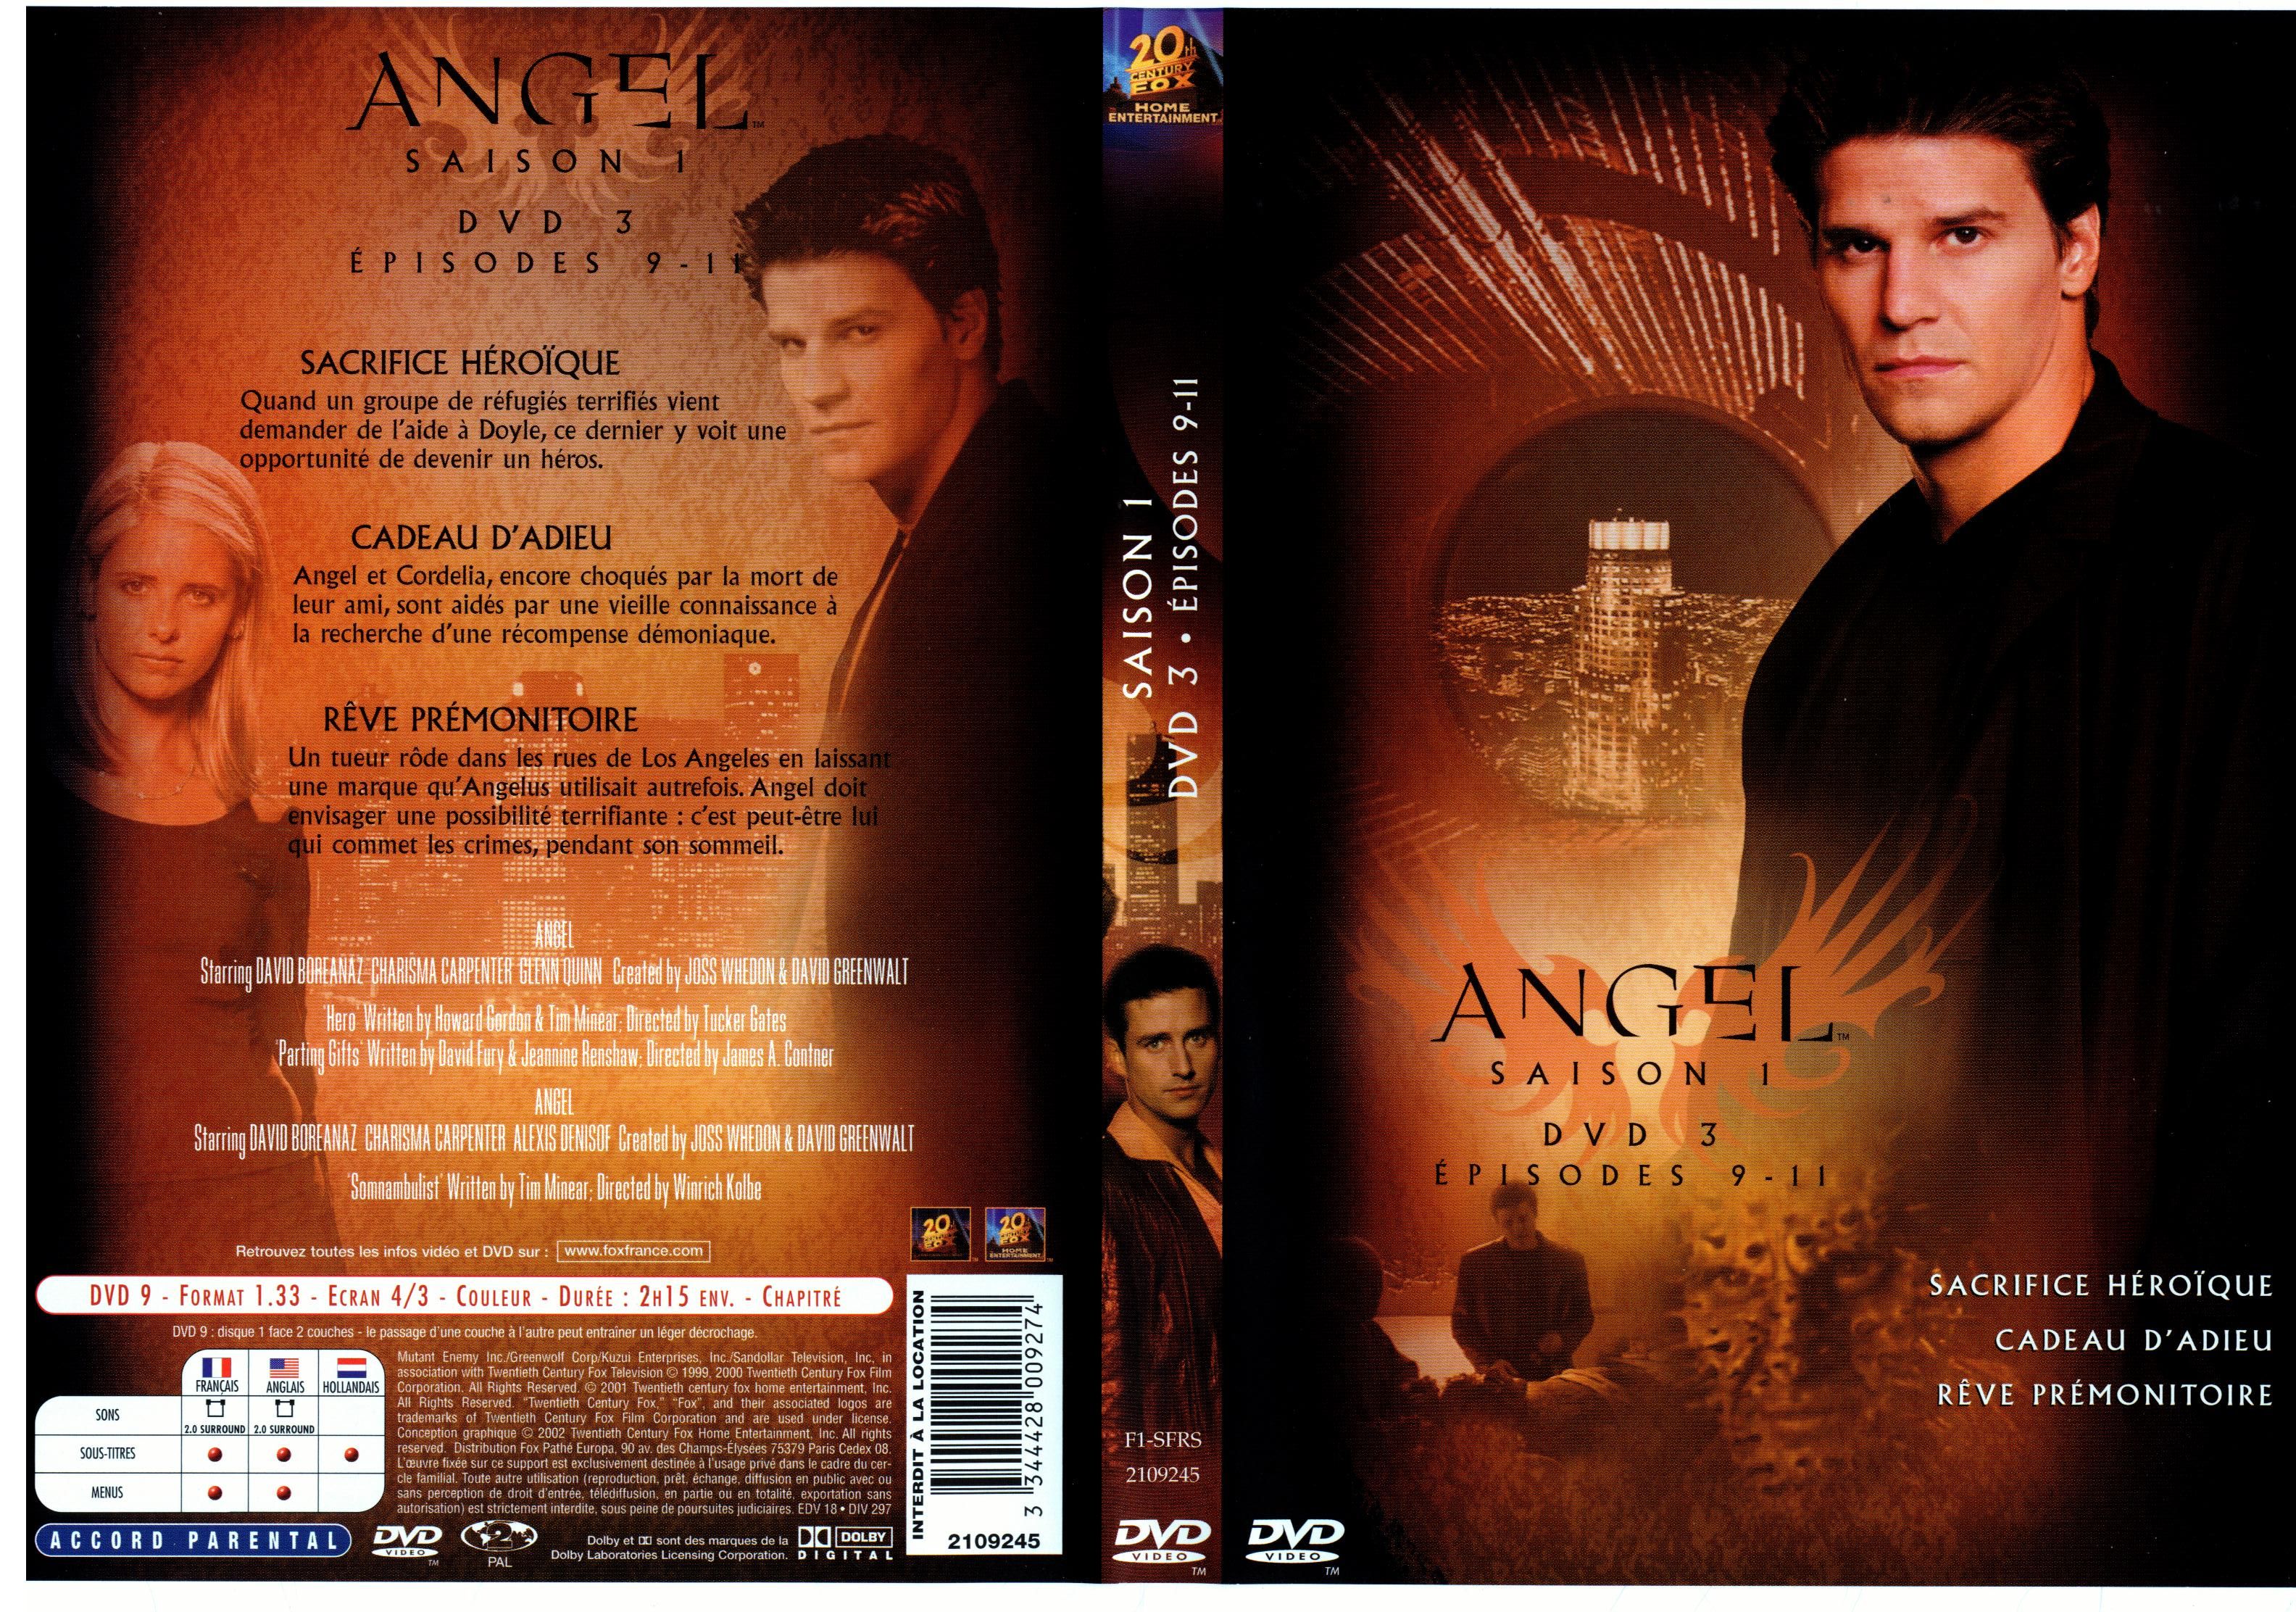 Jaquette DVD Angel Saison 1 dvd 3